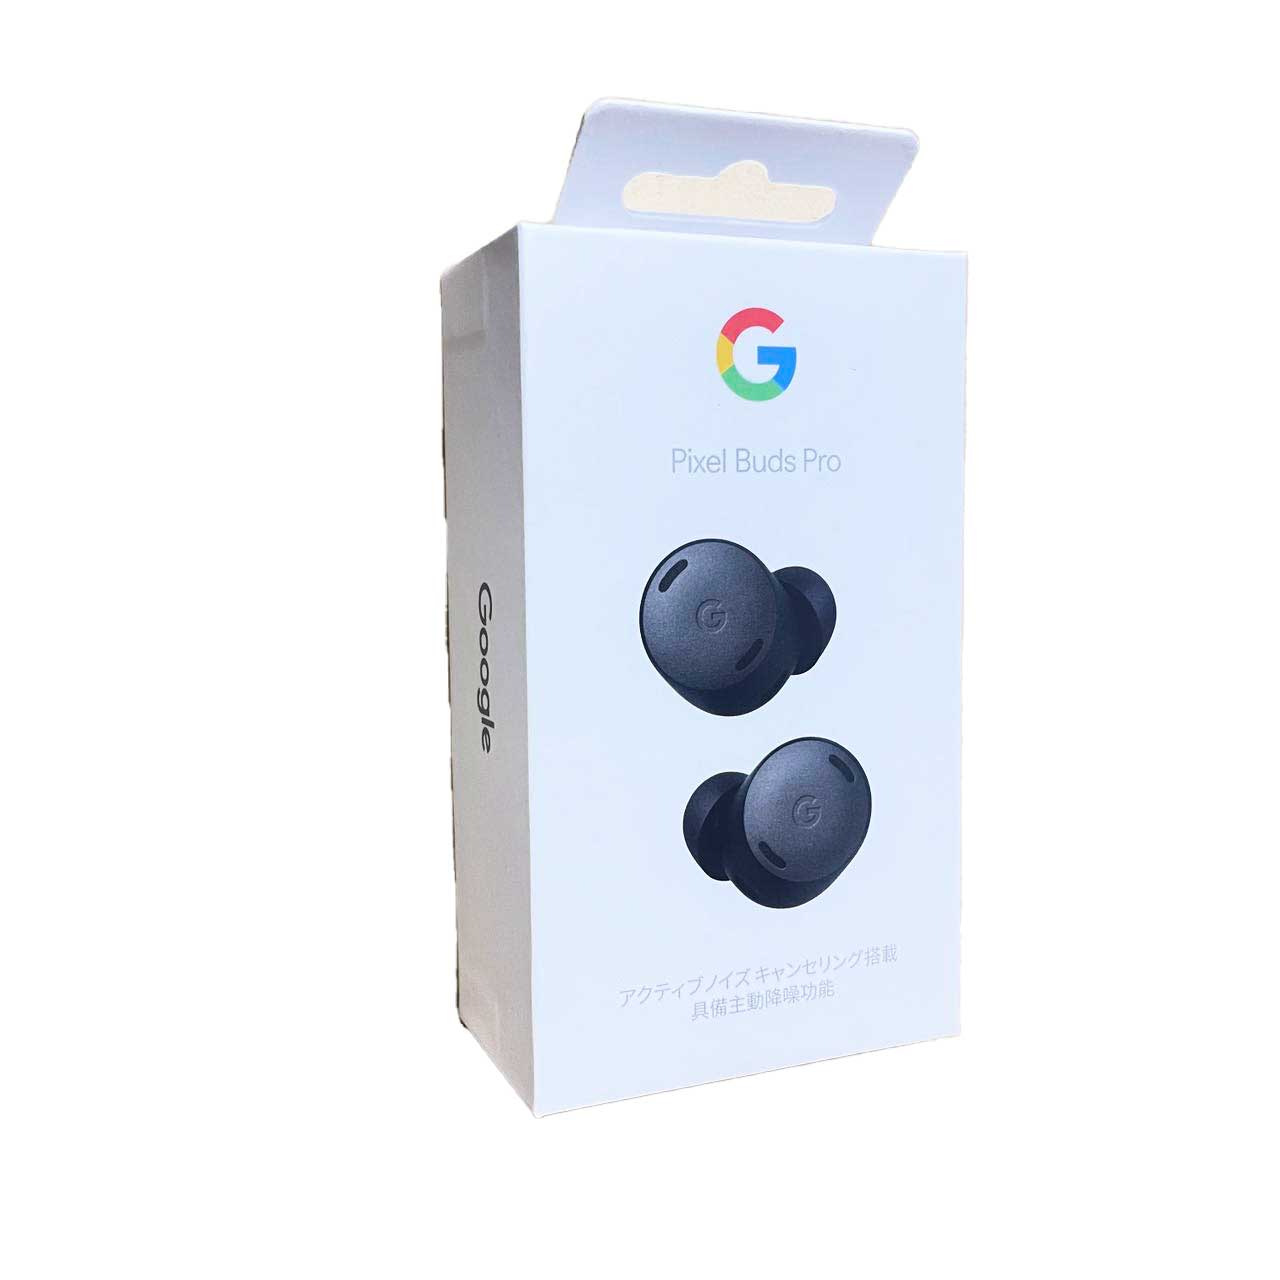 【土日祝発送】【新品】Google Pixel Buds Pro ワイヤレスイヤホン Charcoal